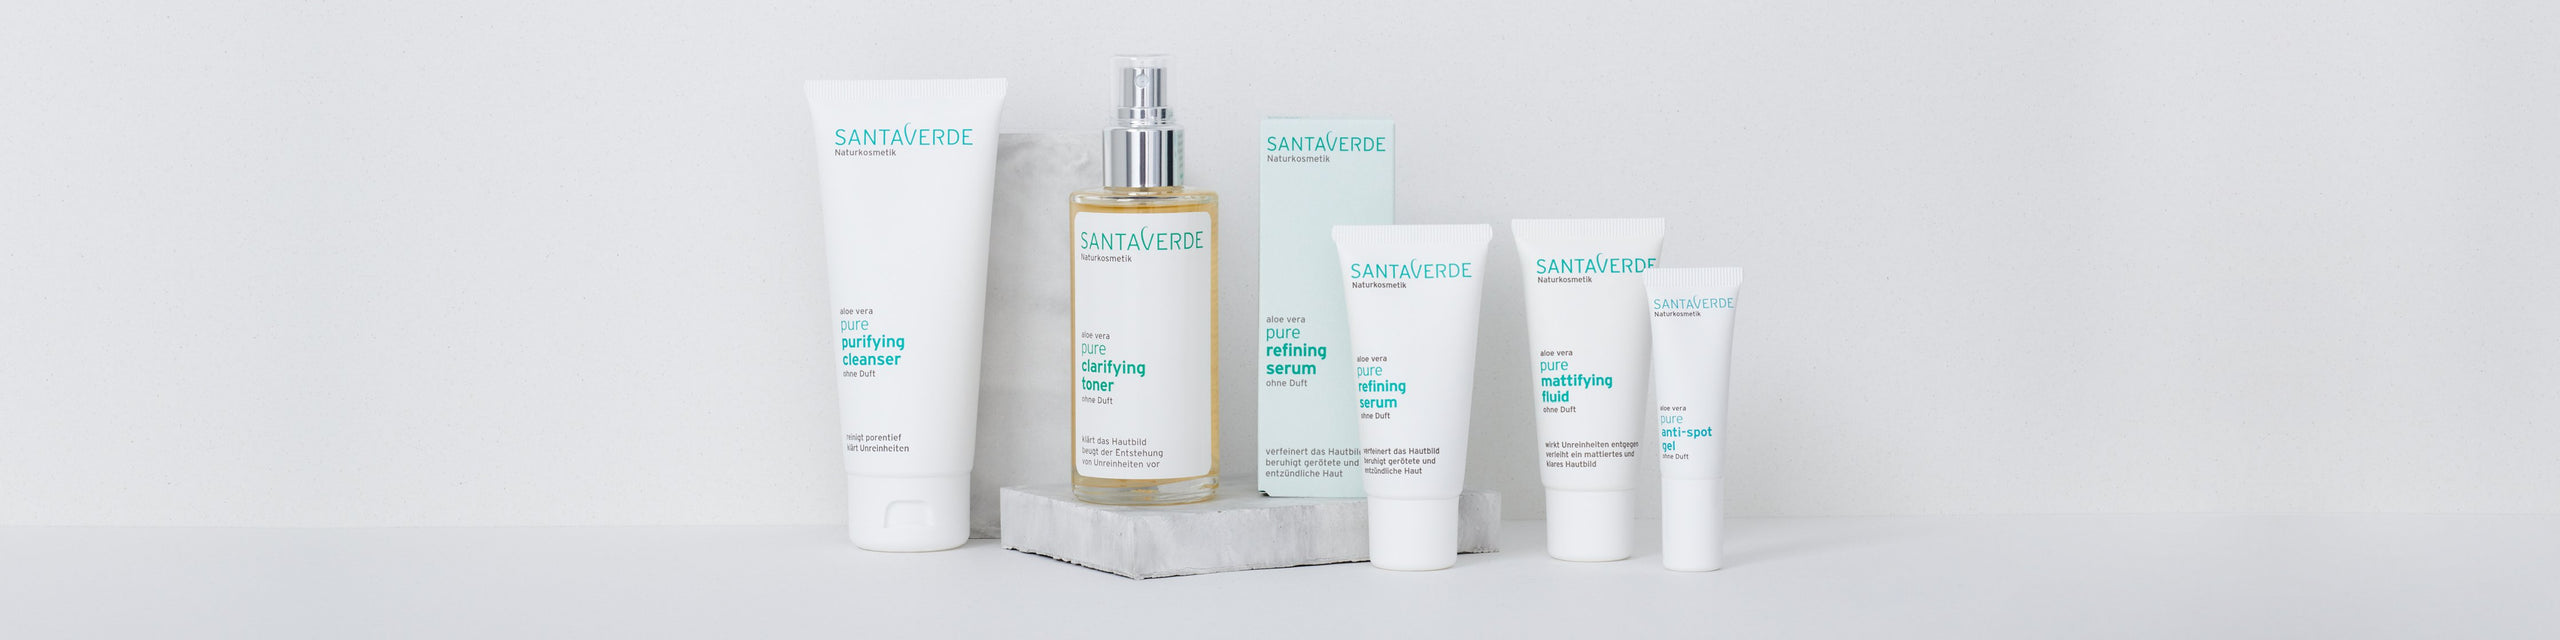 Gesichtspflege für sensible und unreine Haut - Santaverde pure Produktlinie - Inhalt